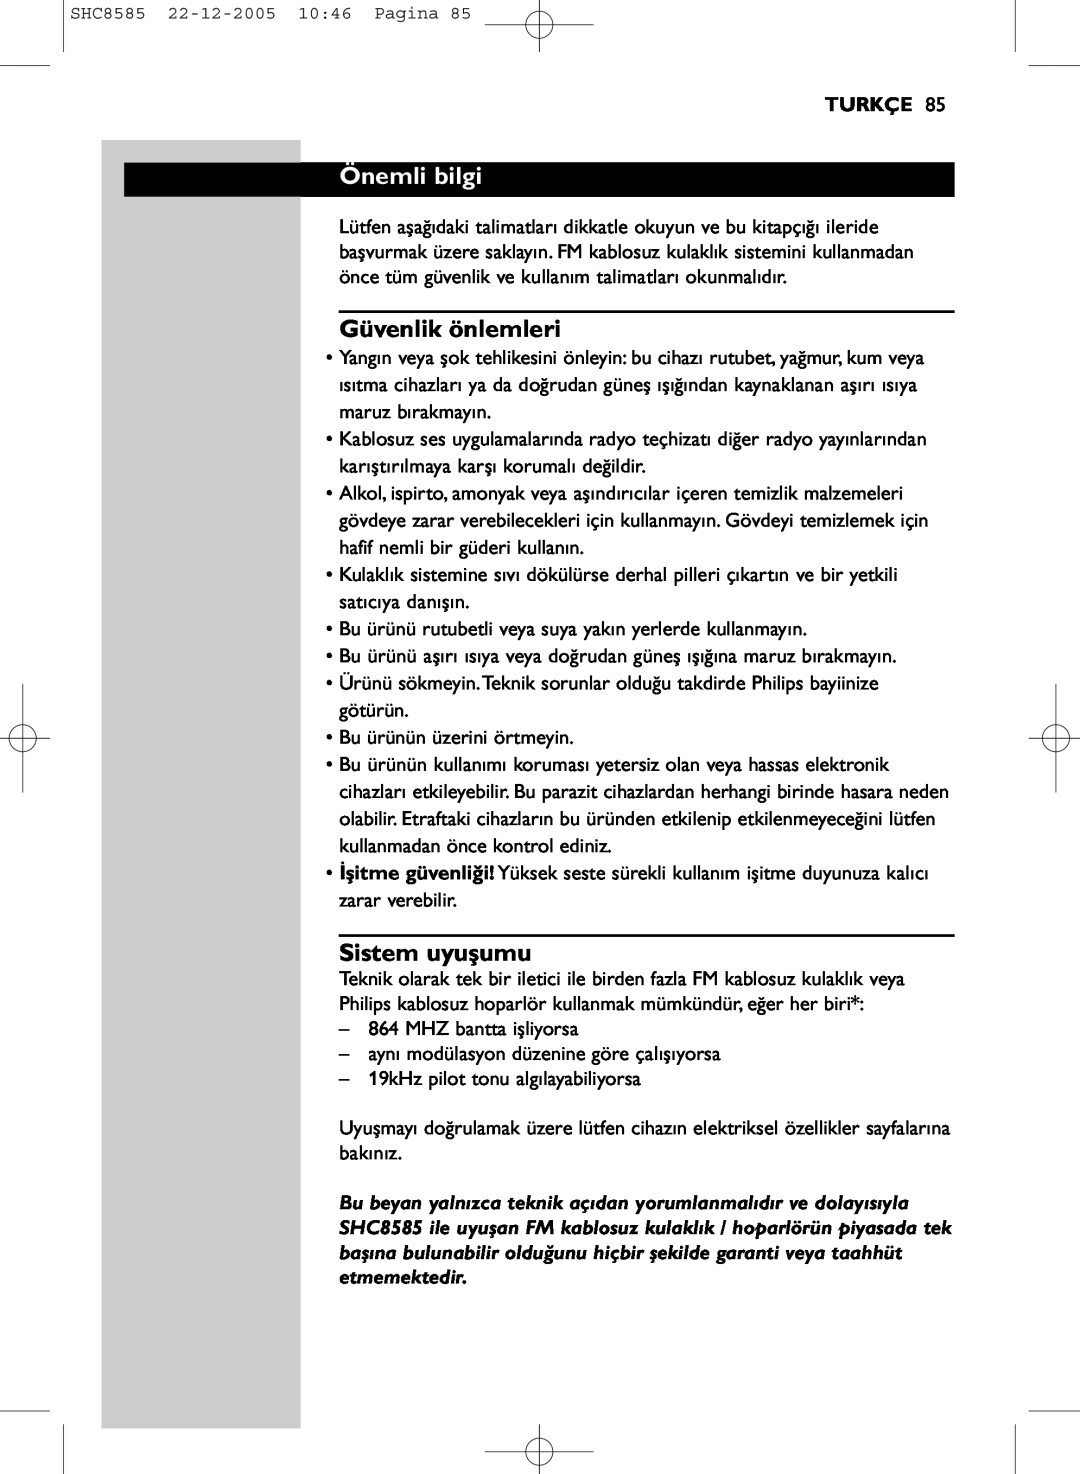 Philips SHC8585/05 manual Önemli bilgi, Güvenlik önlemleri, Sistem uyuşumu, Turkçe 